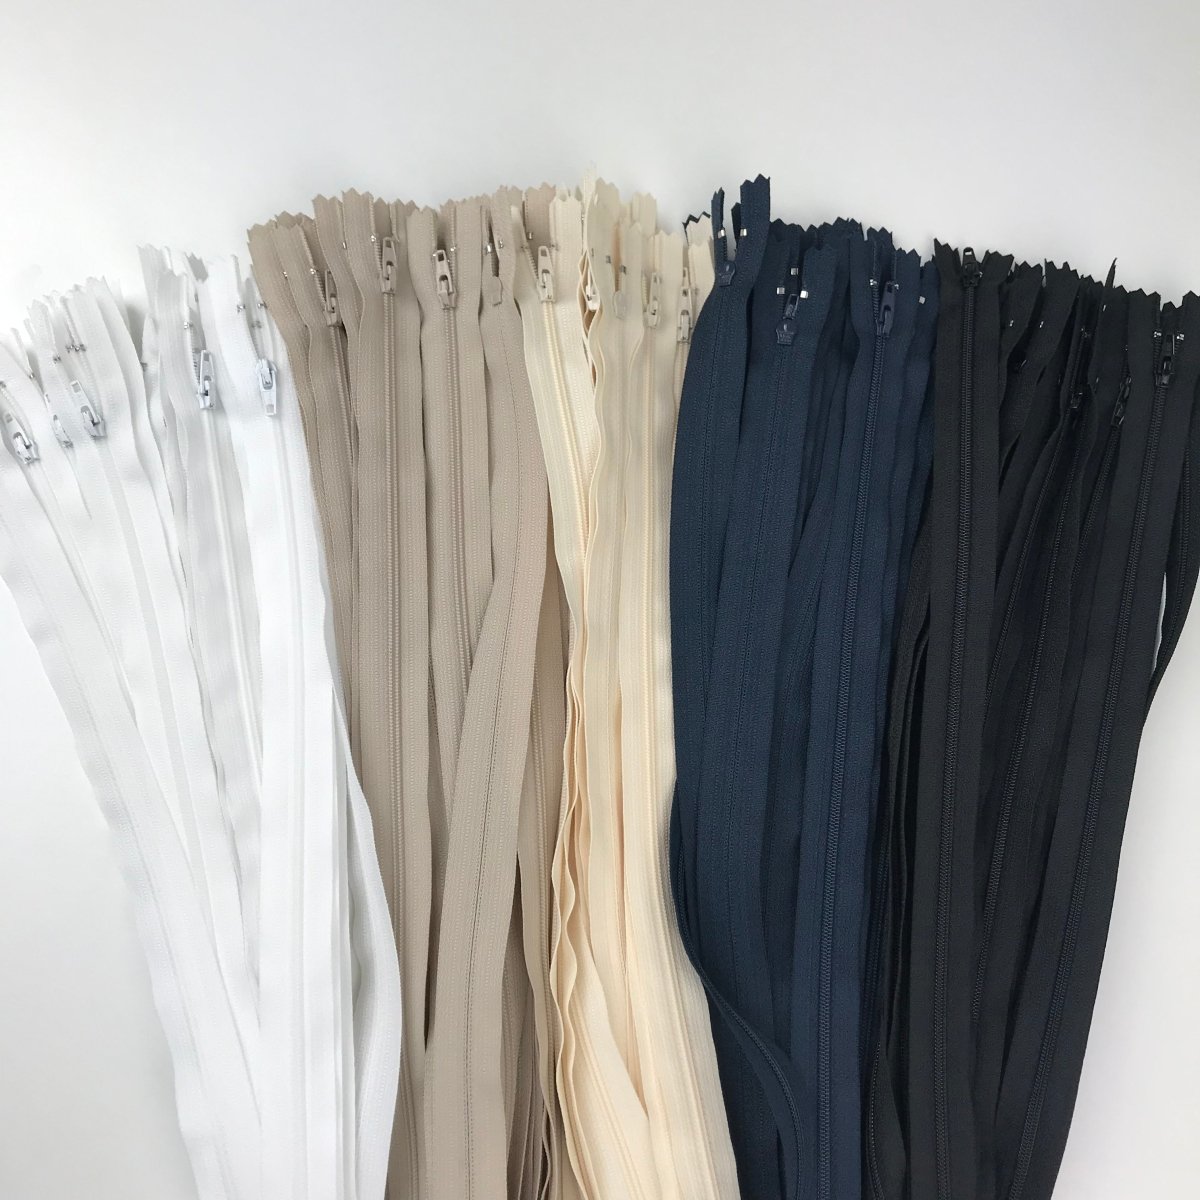 YKK Zipper - Skirt and Dress - 18cm (7") - Sewing Gem